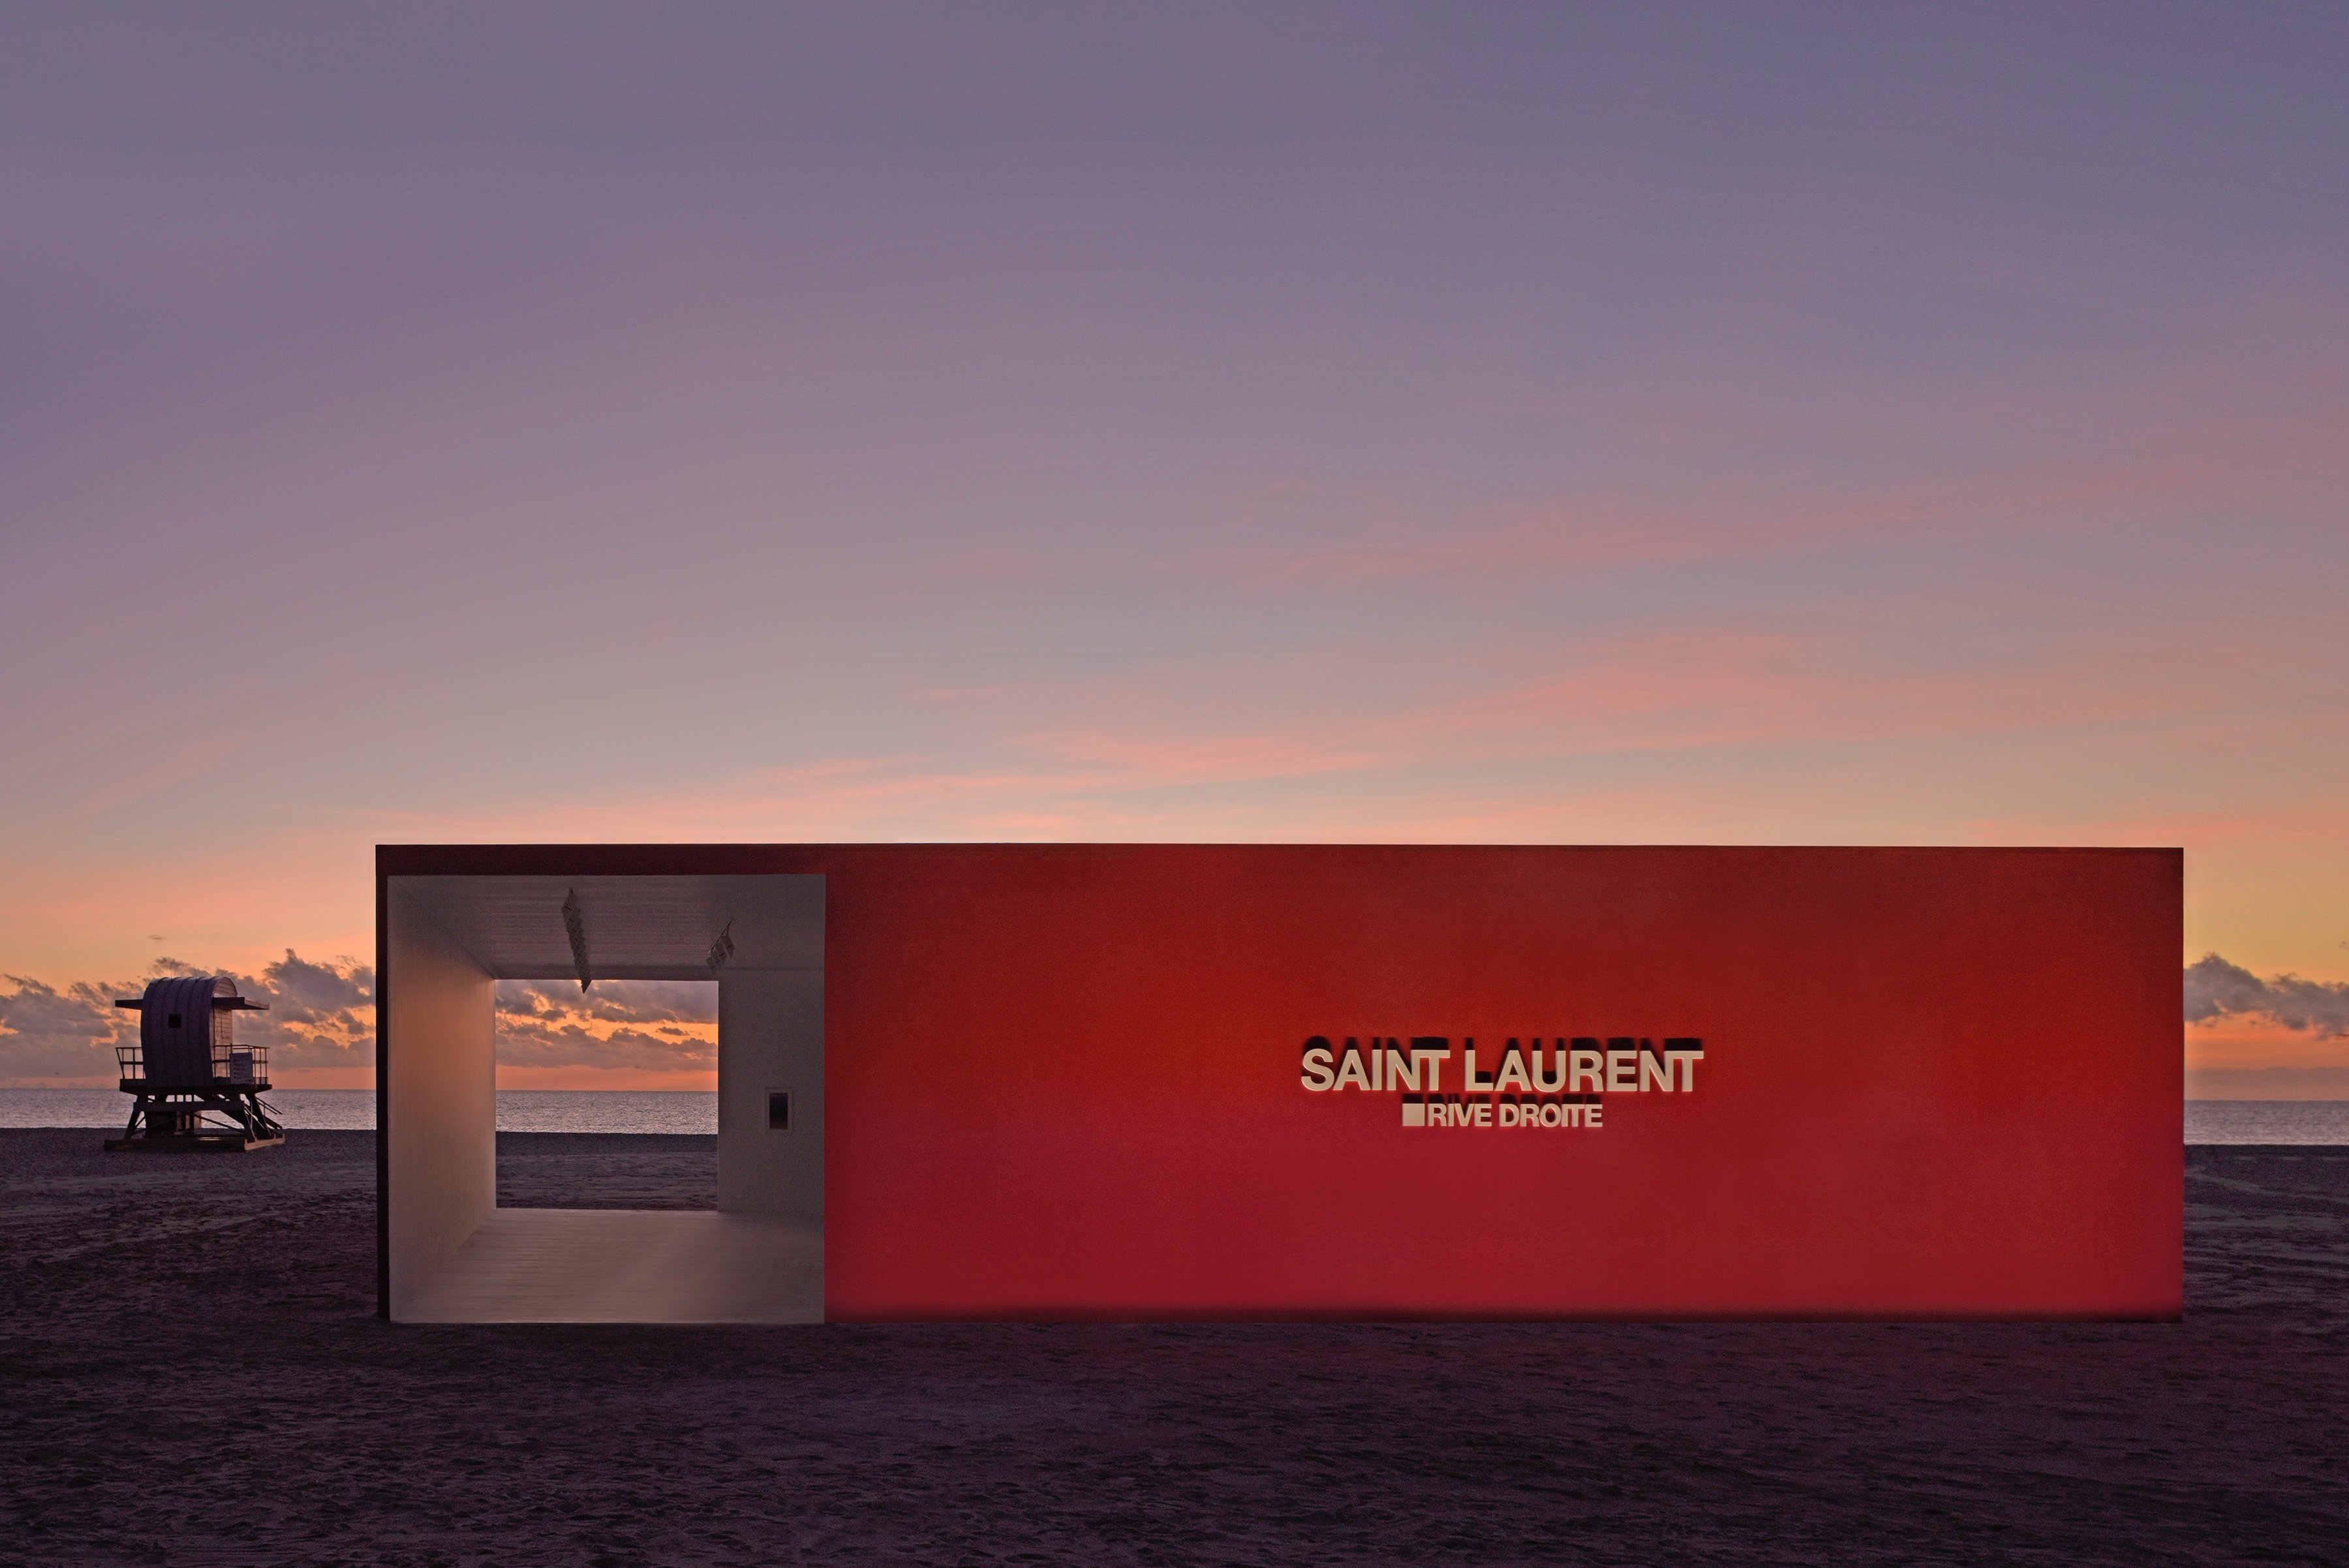 Yves Saint Laurent - News, Tips & Guides